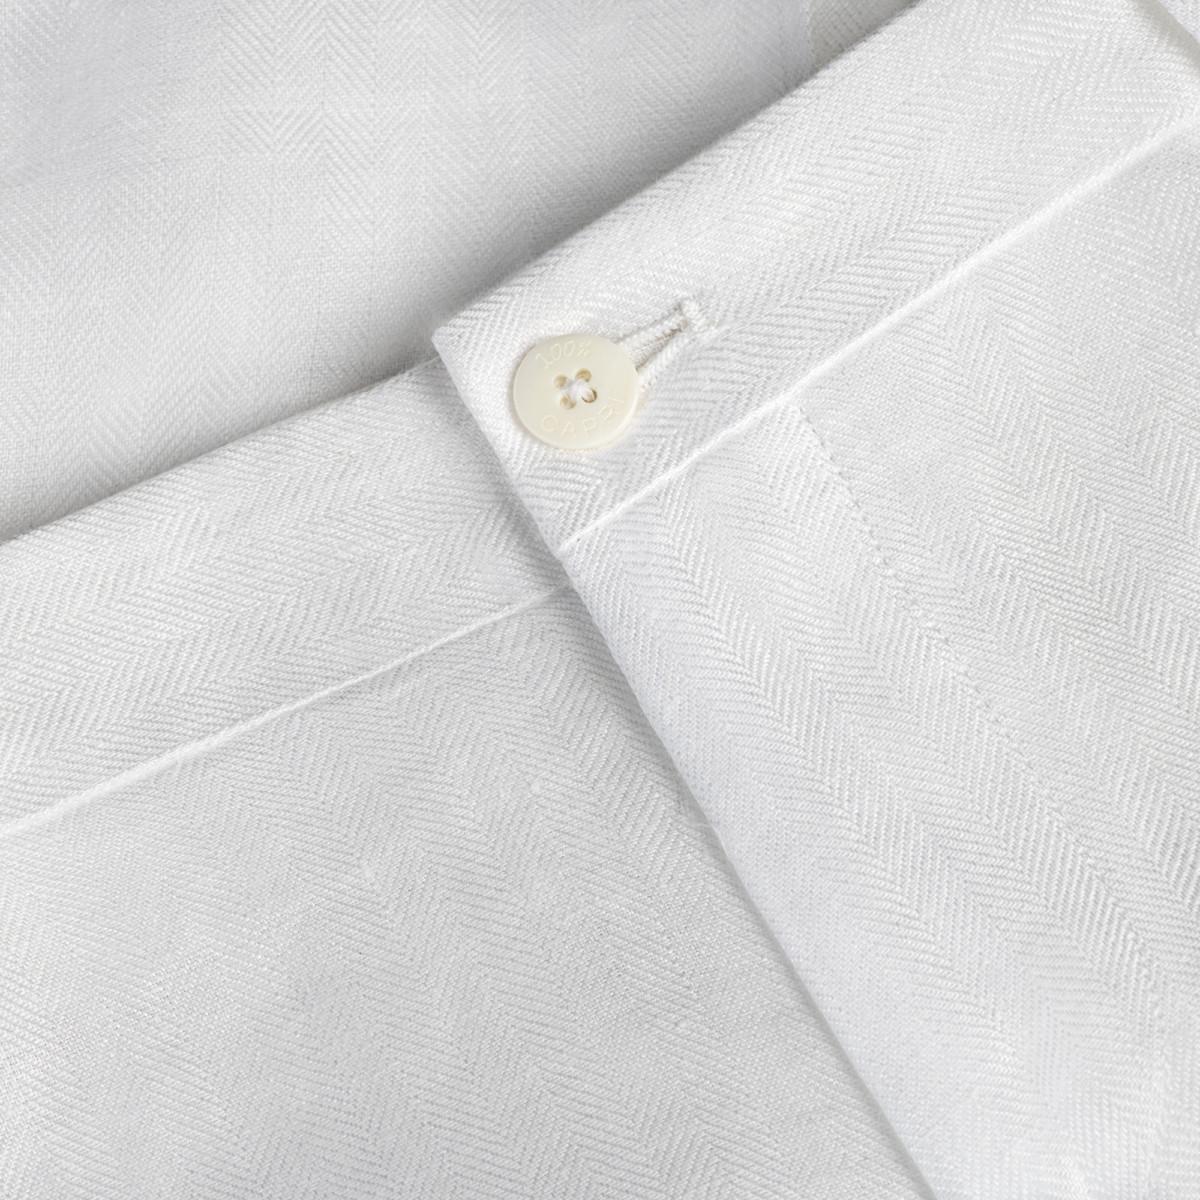 Pantalone New Capri for woman 100% Capri white linen pant detail